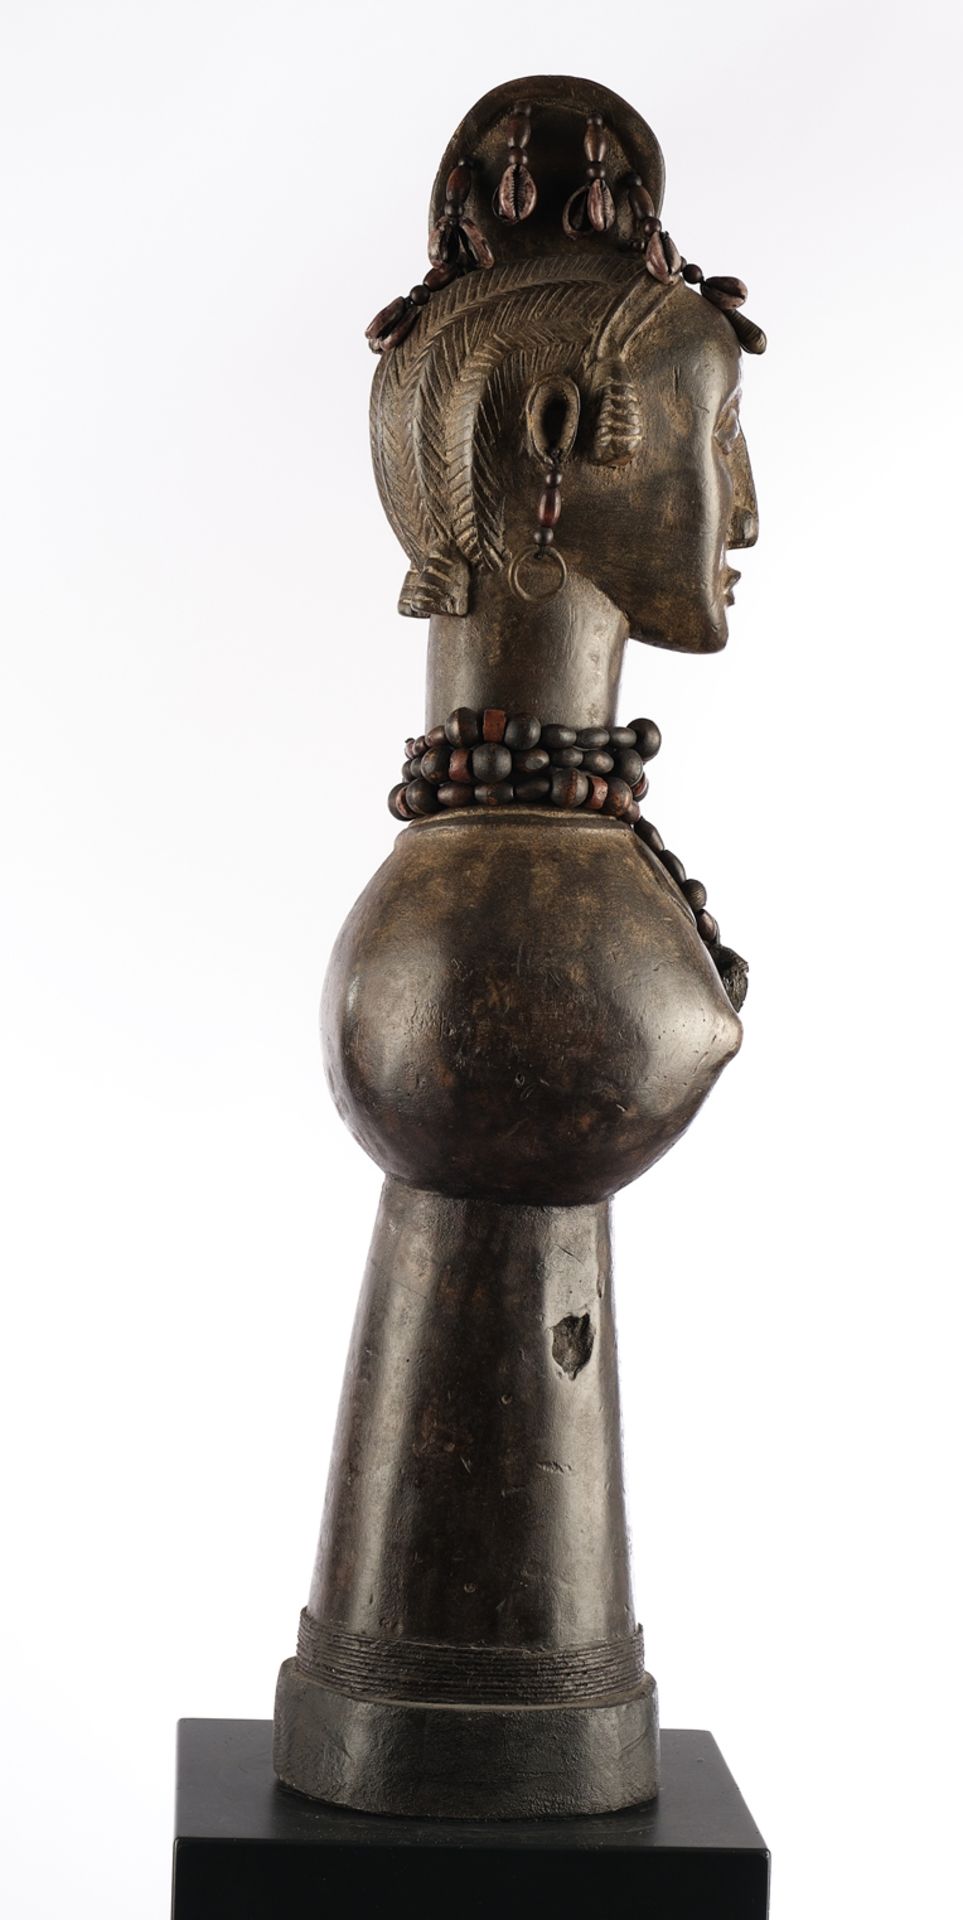 Marionettenbüste, weiblich, Baga, Guinea, Afrika, Holz, schwarzbraun patiniert, Halskette mit Amule - Bild 2 aus 4